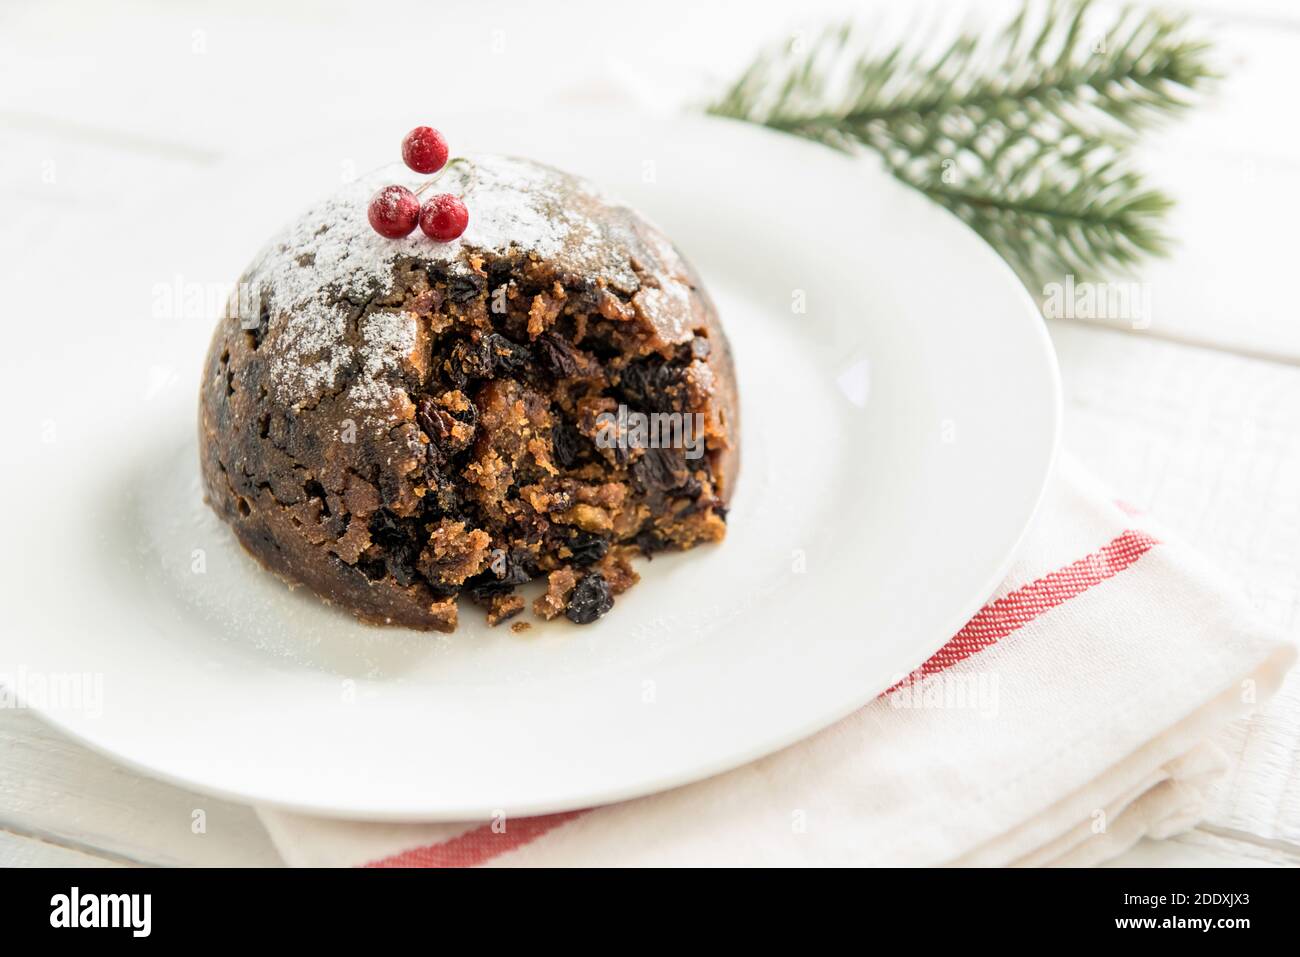 Pouding traditionnel de Noël ou de prune recouvert de sucre glace en poudre et baies rouges sur plaque blanche Banque D'Images